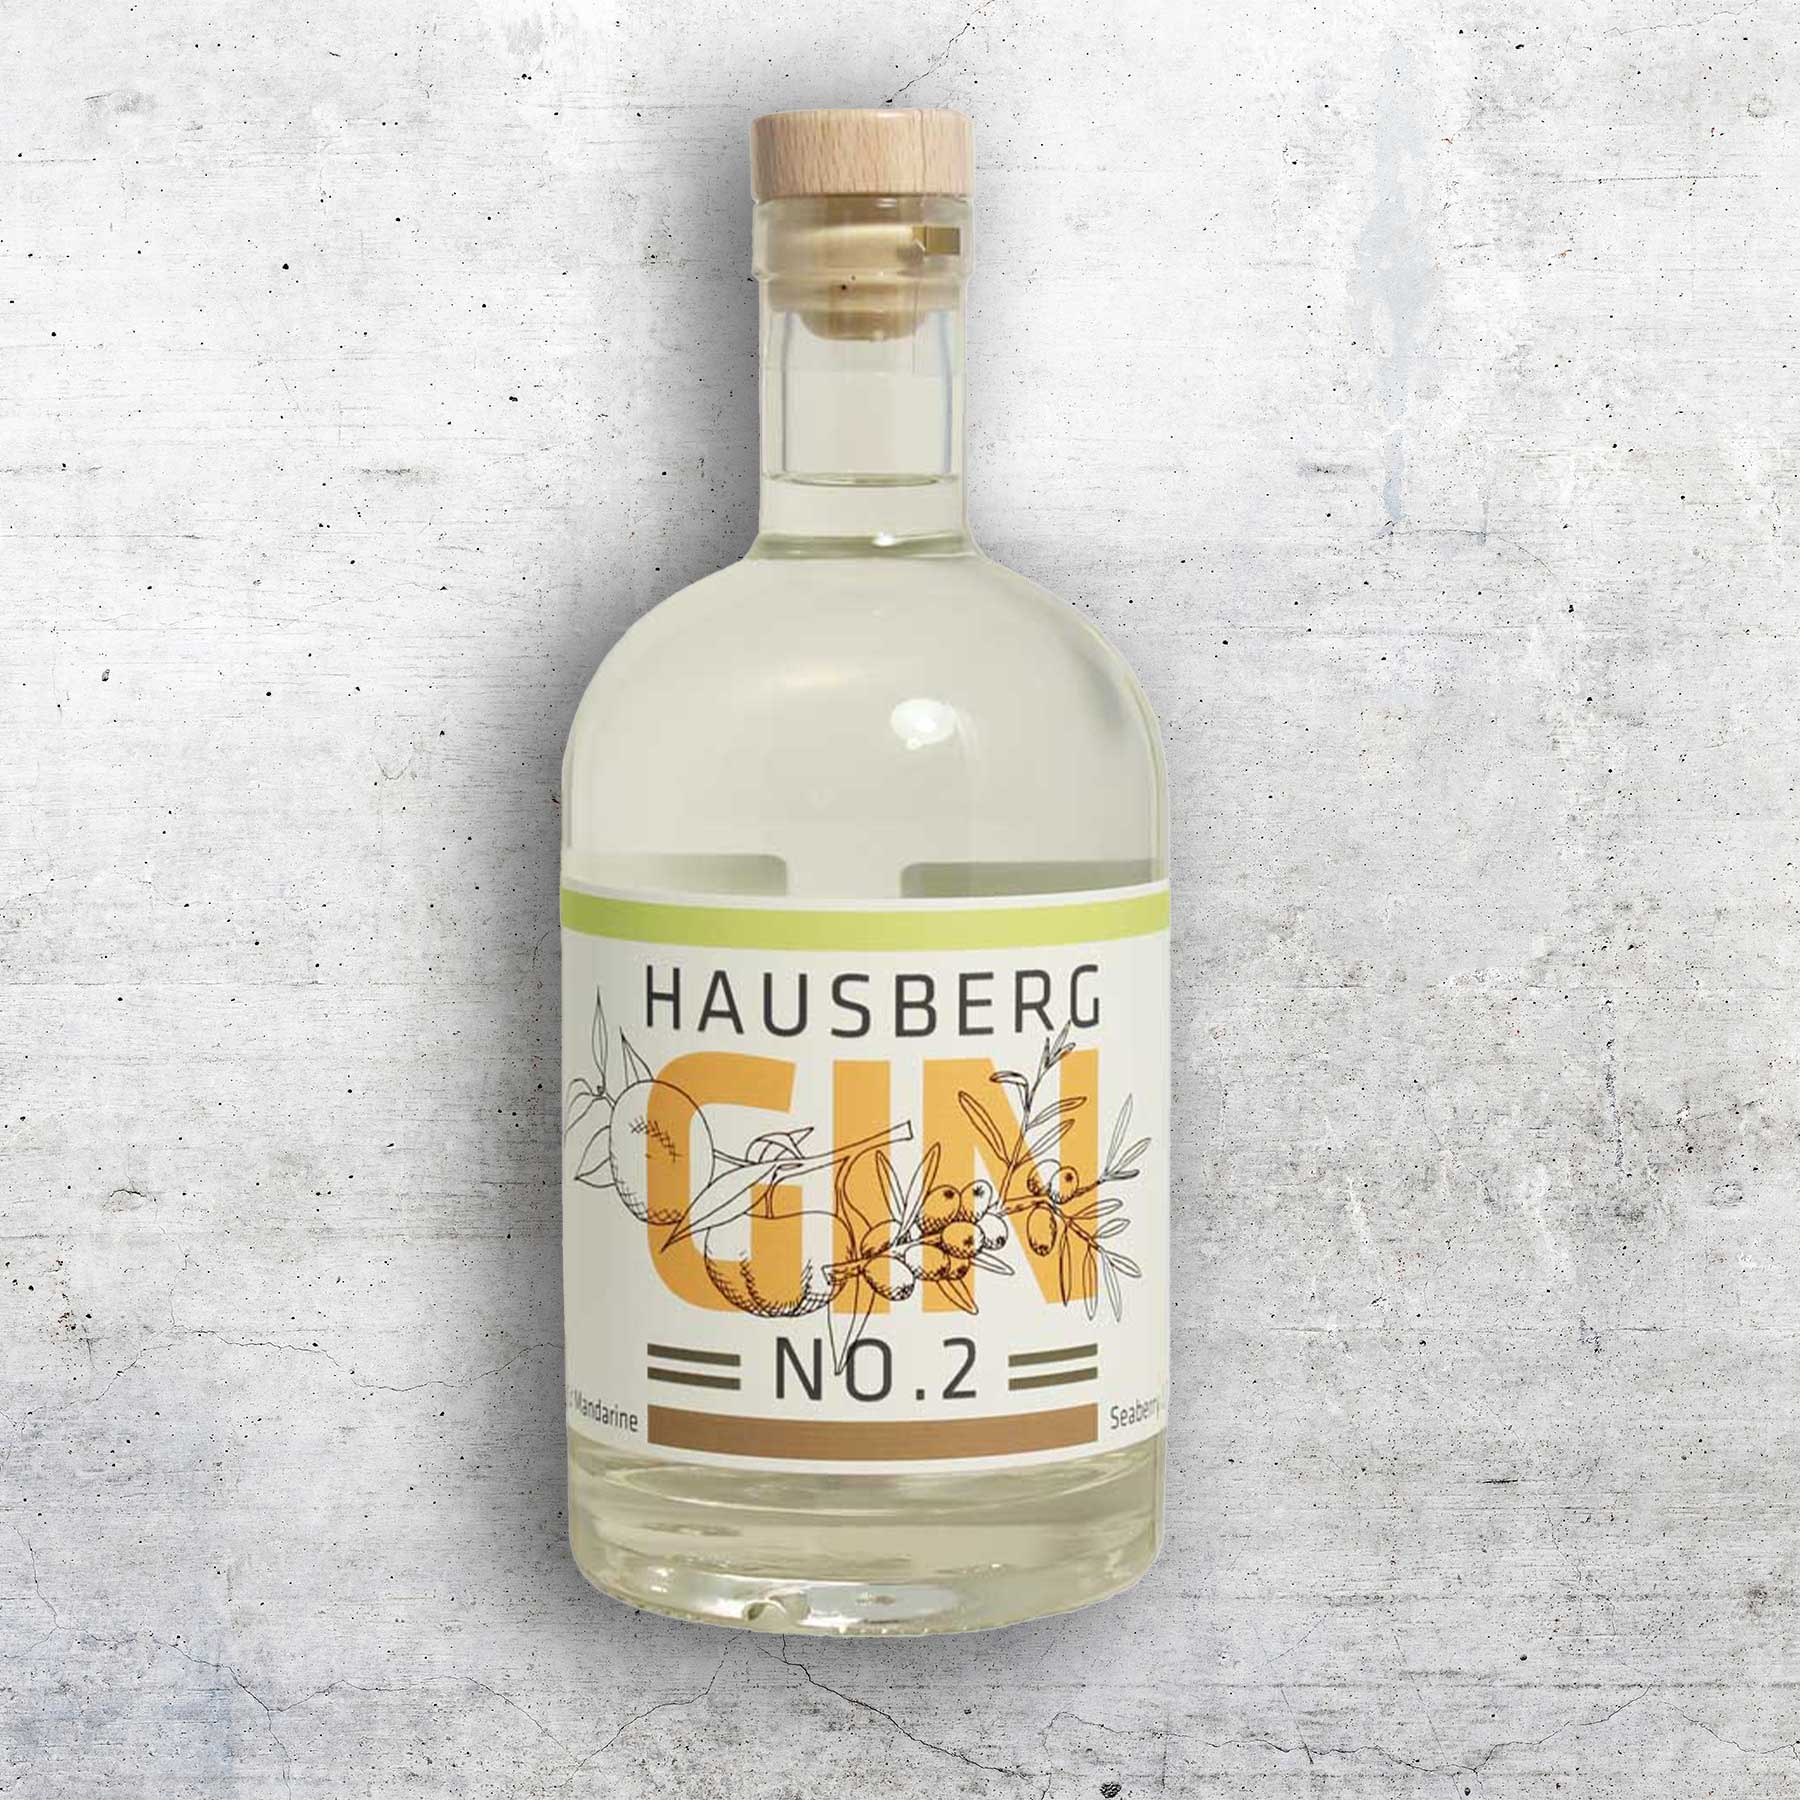 Hausberg Gin No. 2